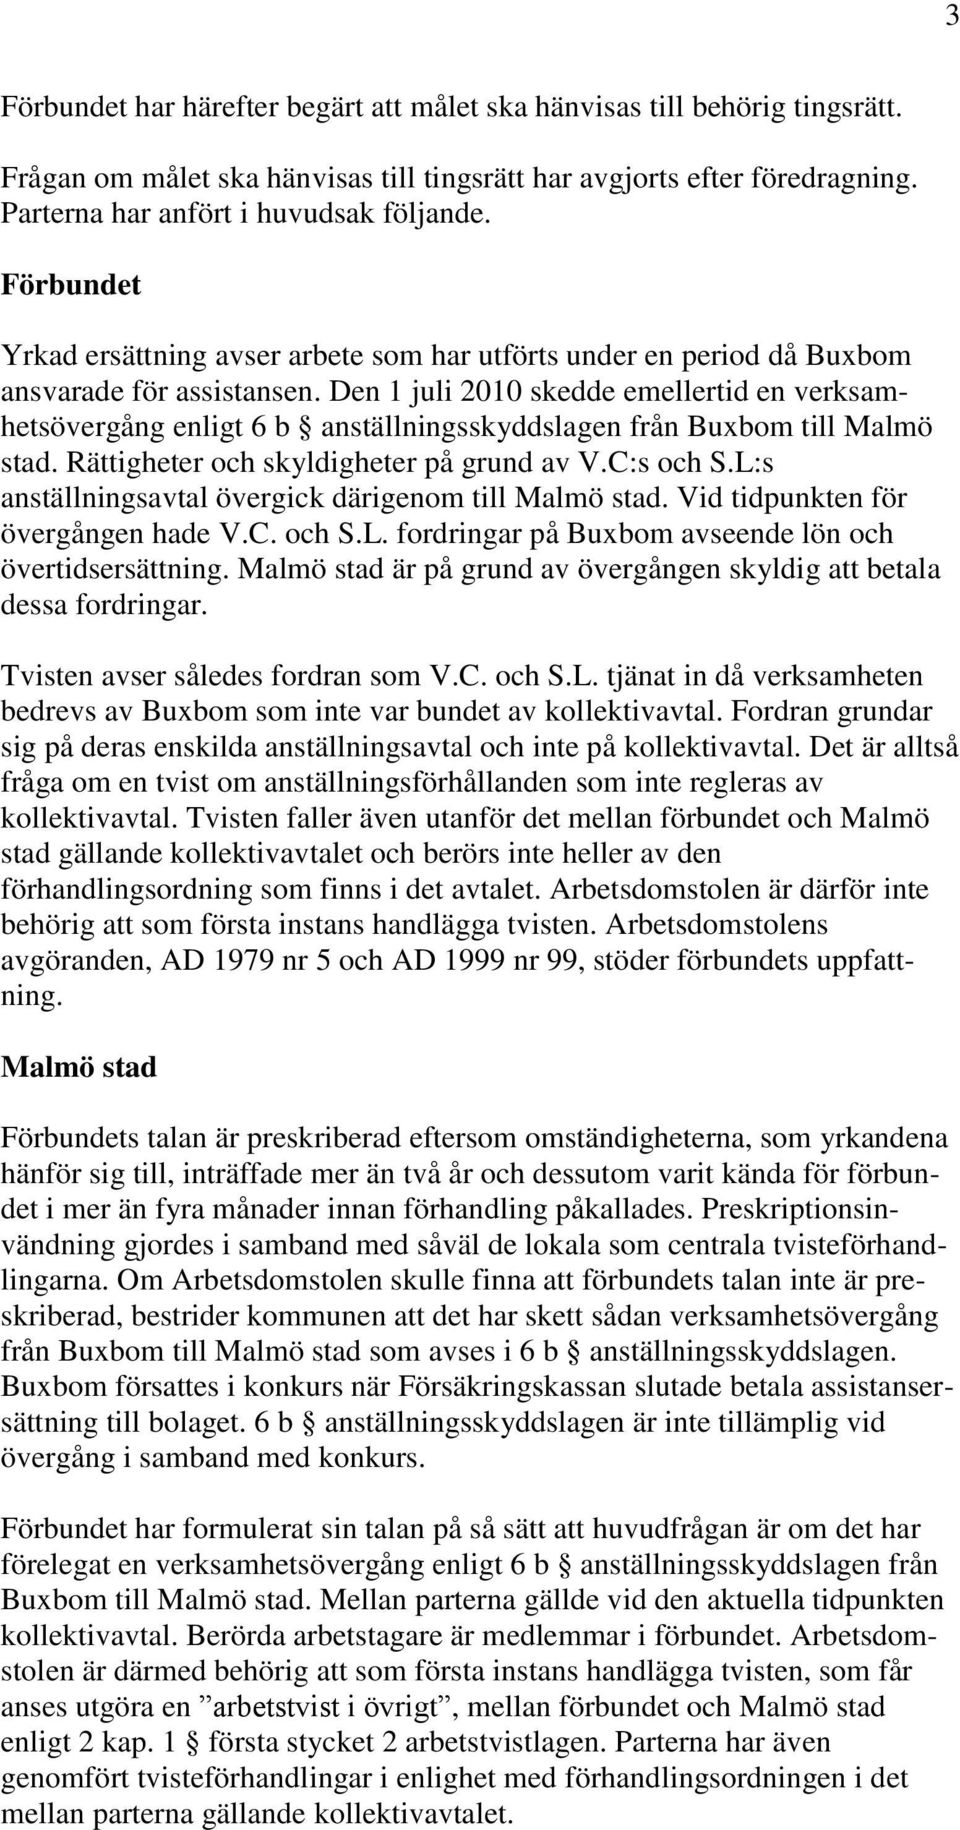 Den 1 juli 2010 skedde emellertid en verksamhetsövergång enligt 6 b anställningsskyddslagen från Buxbom till Malmö stad. Rättigheter och skyldigheter på grund av V.C:s och S.